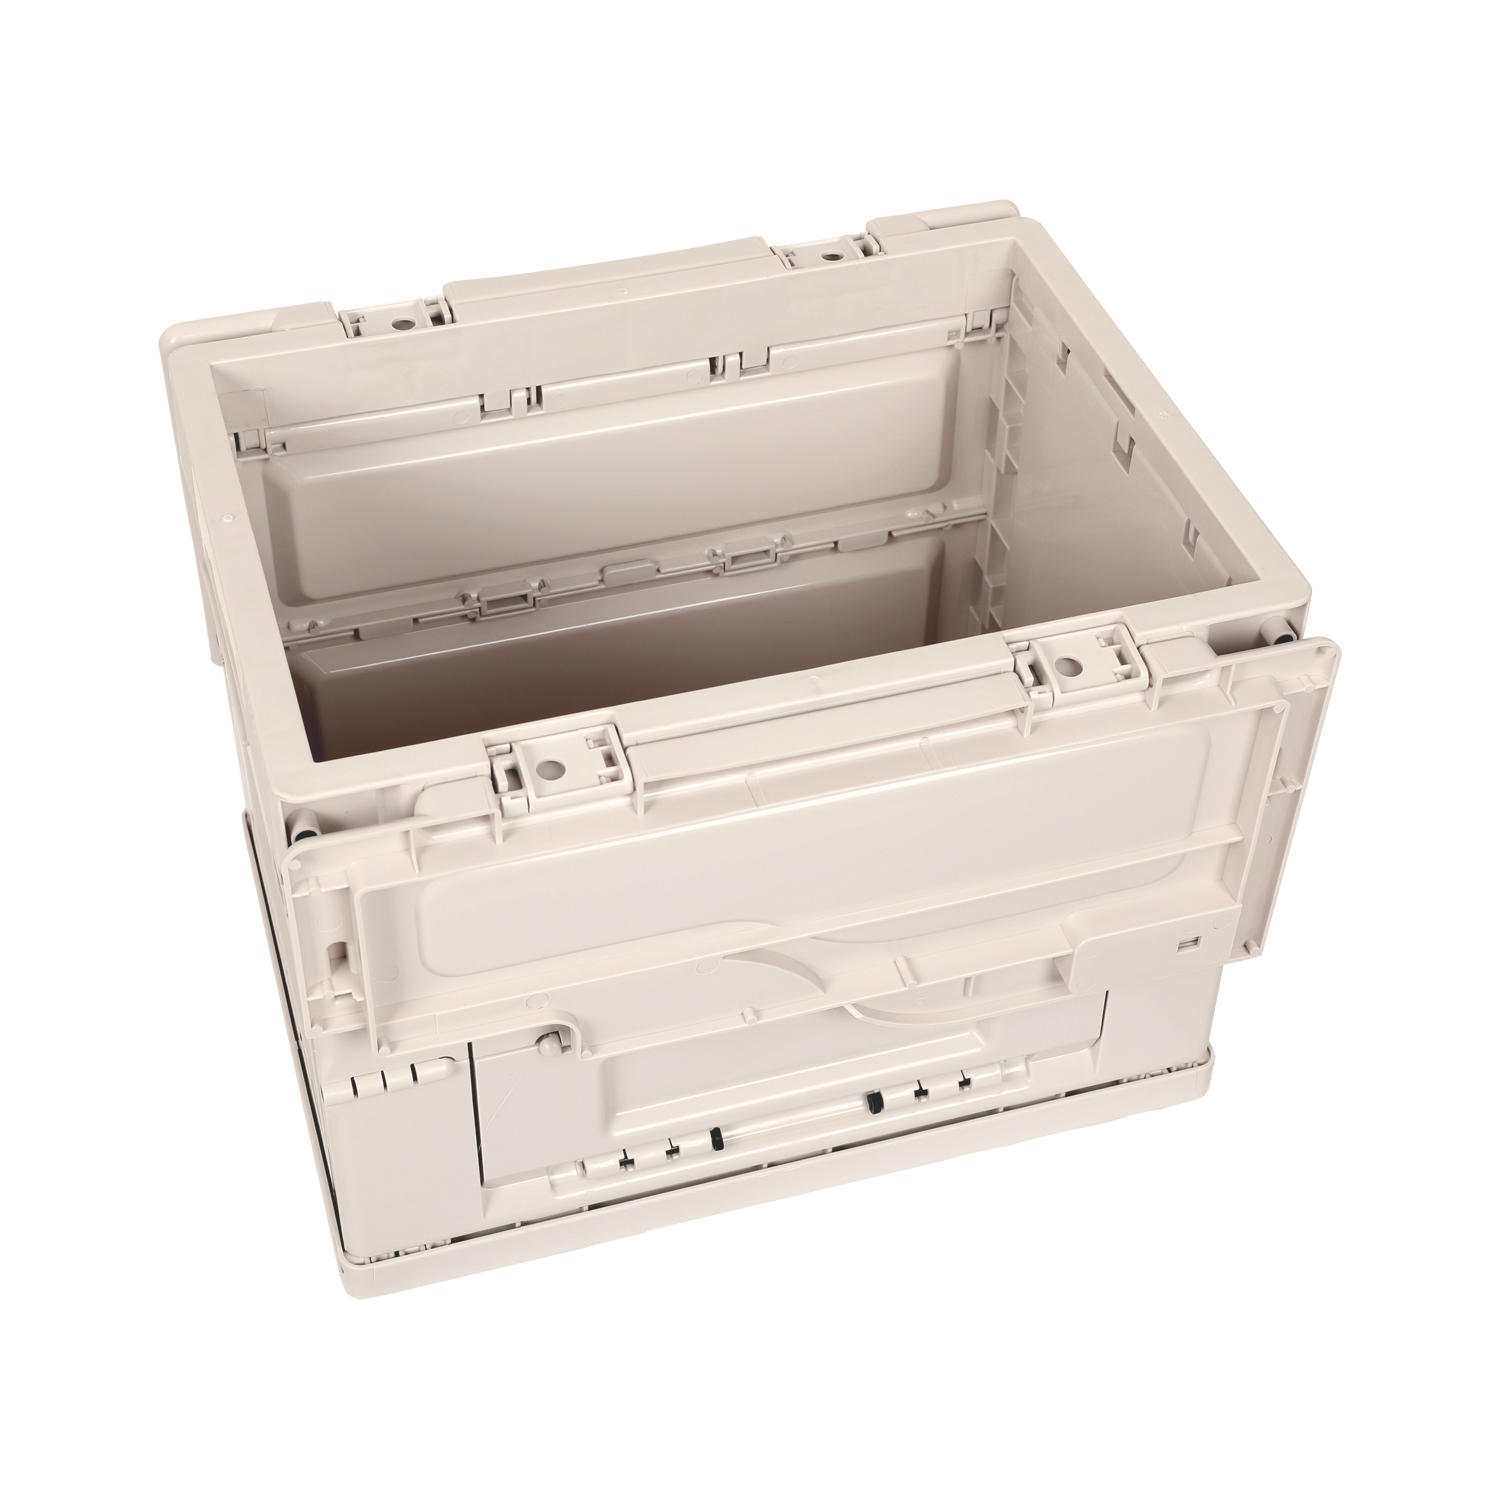 Ящик складной Naturehike PP folding storage box 25L Upgrade Grey